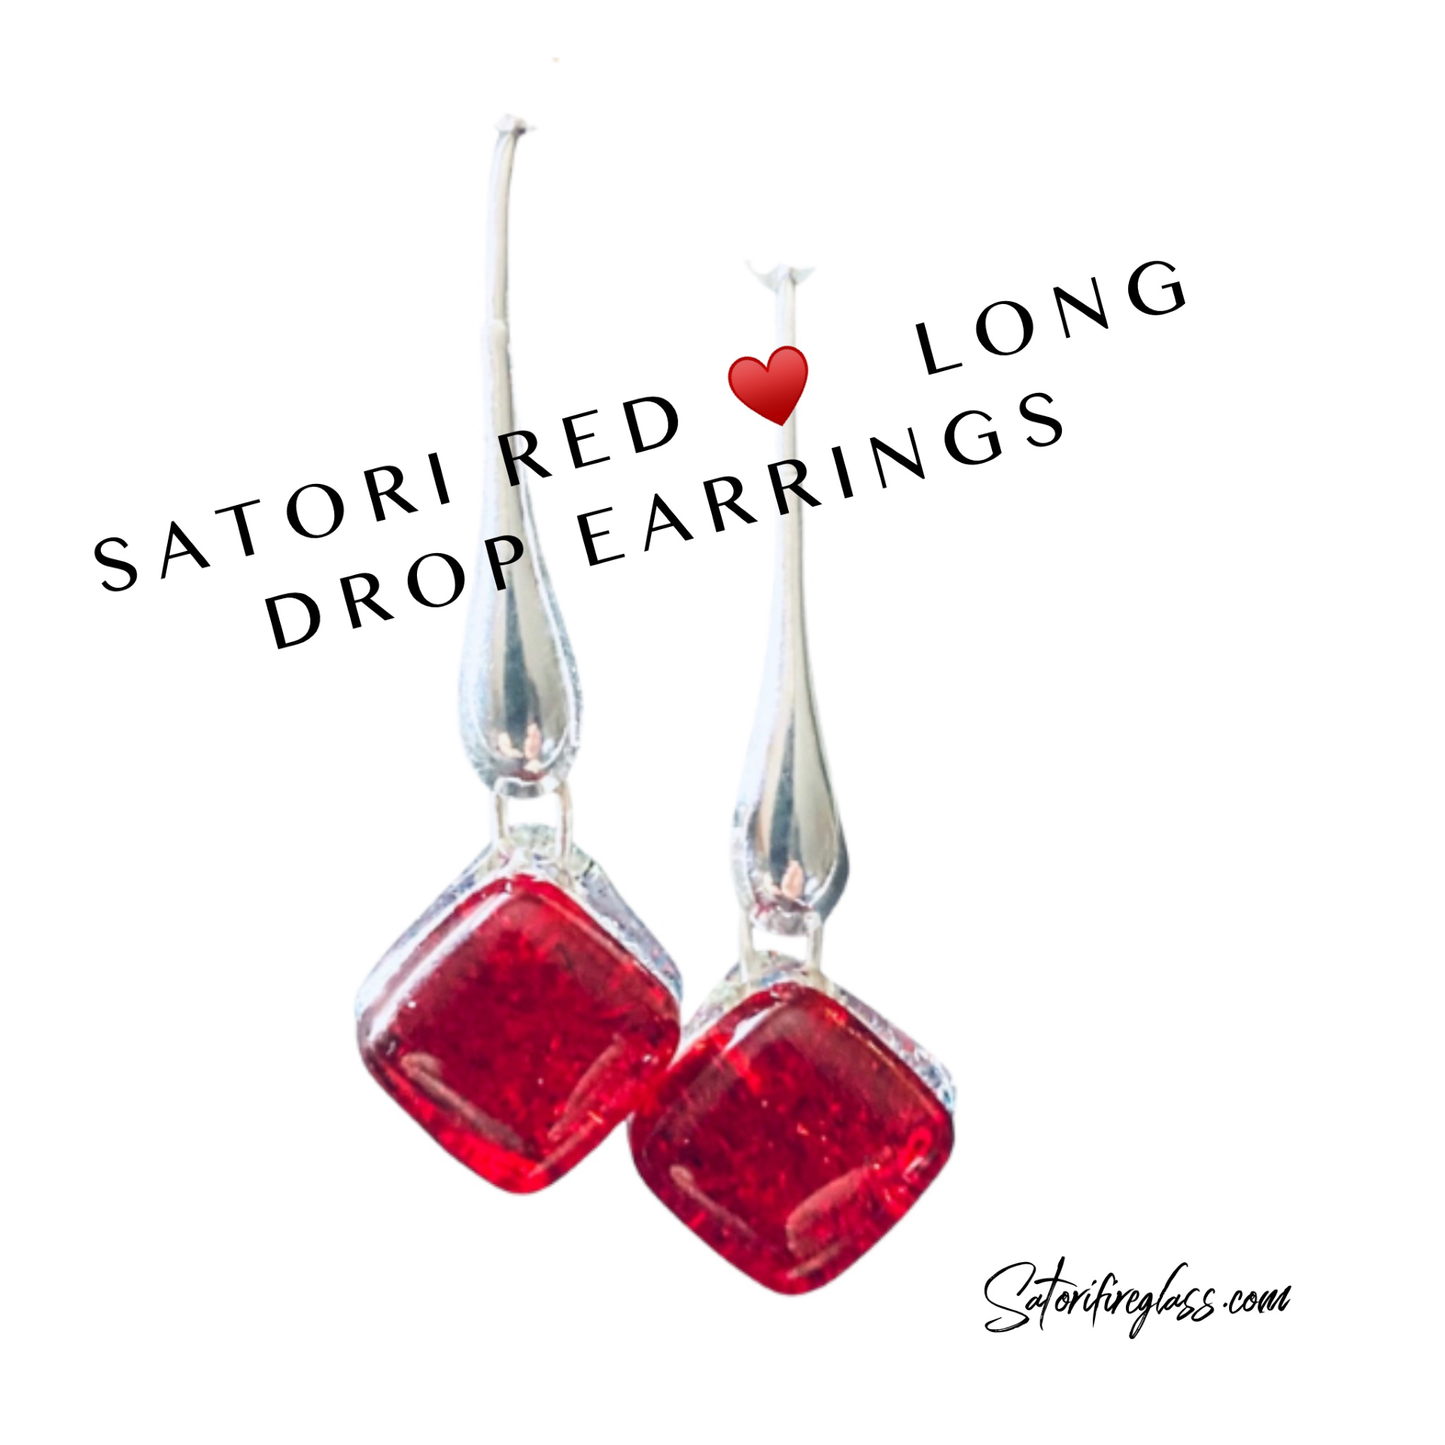 Satori Long Drop Earrings